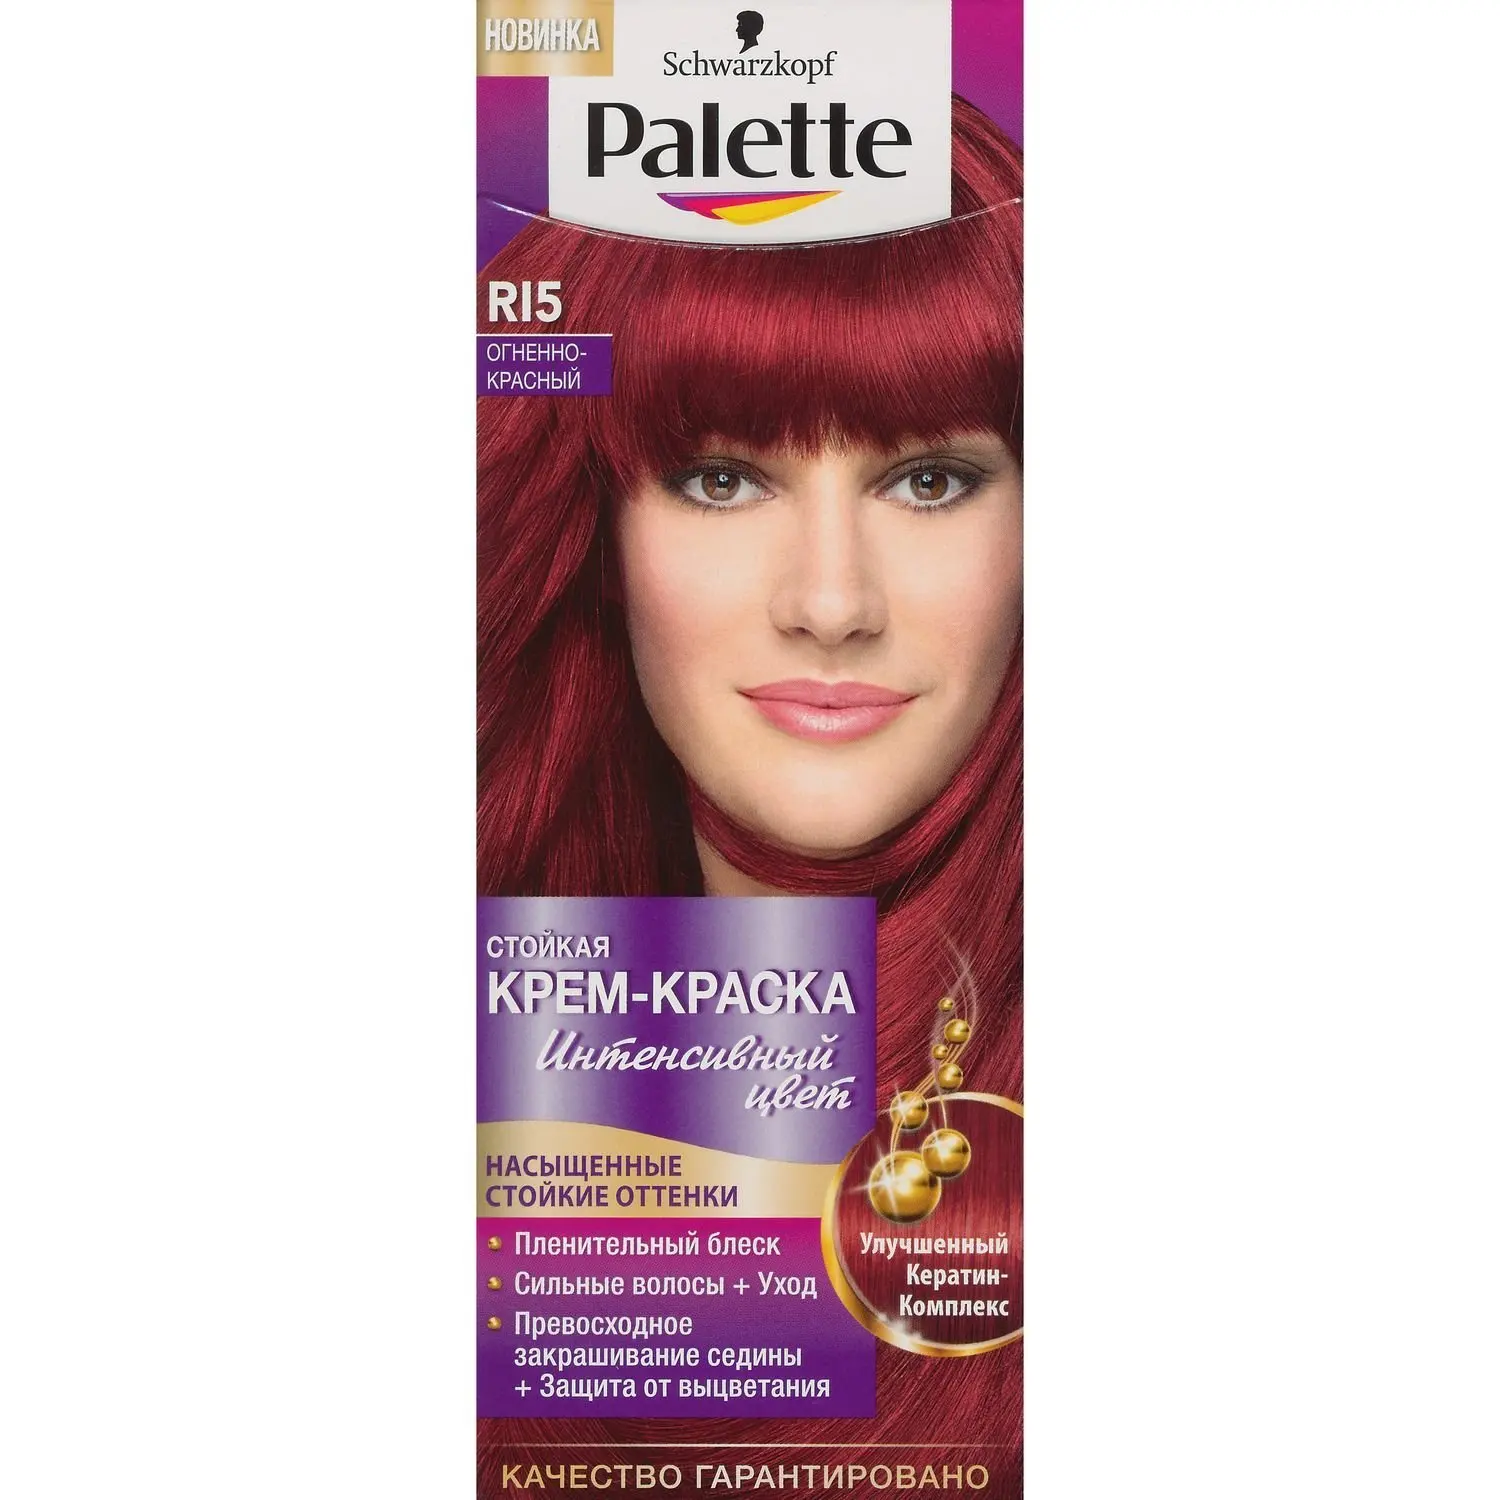 Палетт ri5 Огненный красный краска для волос